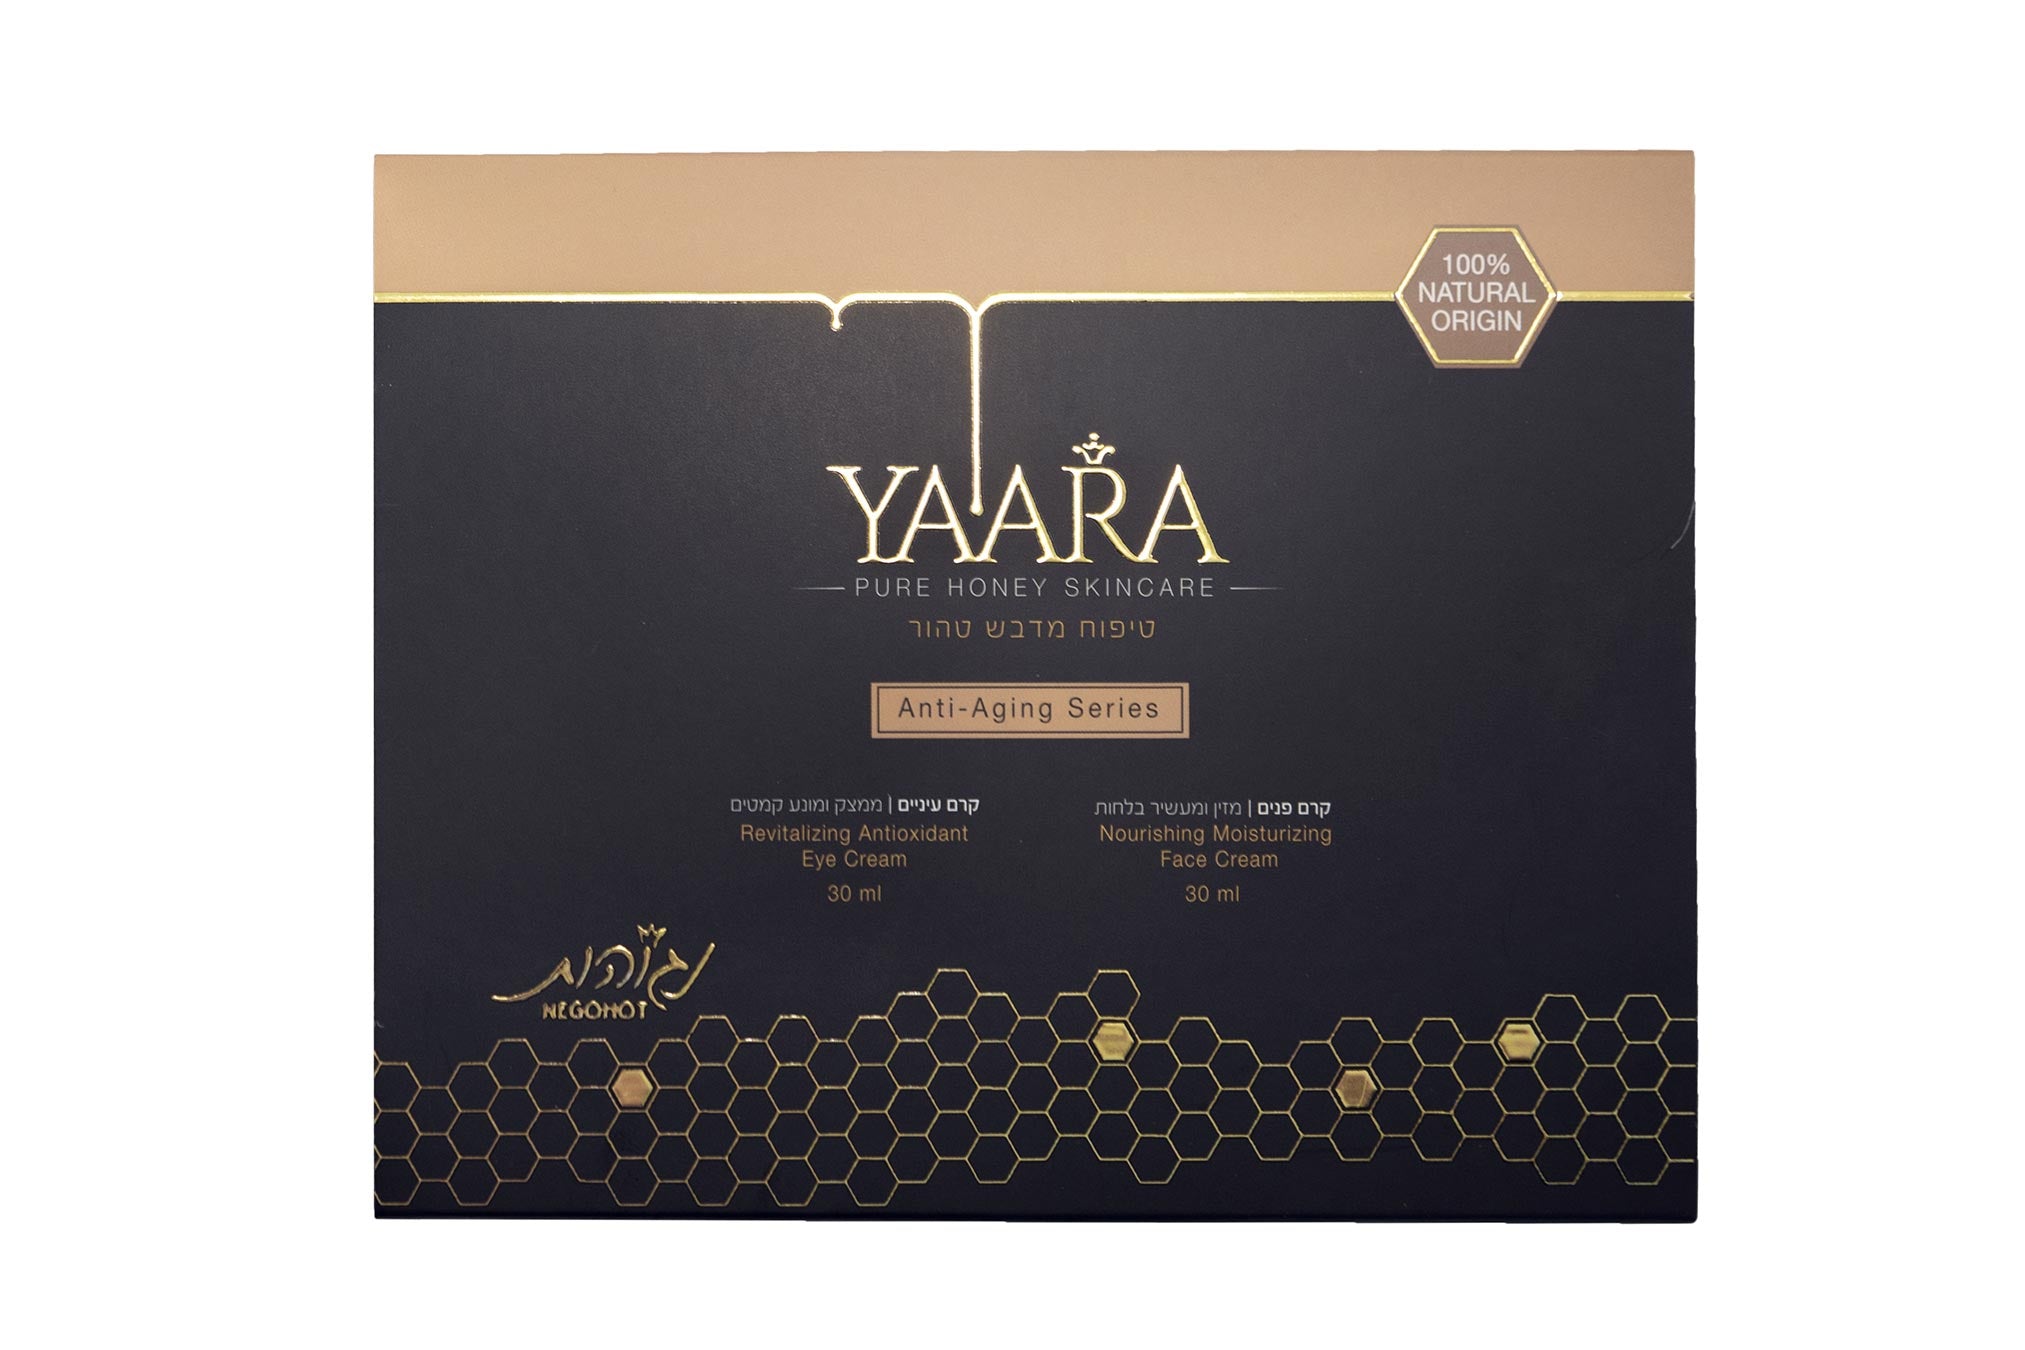 YAARA - Honey Oil